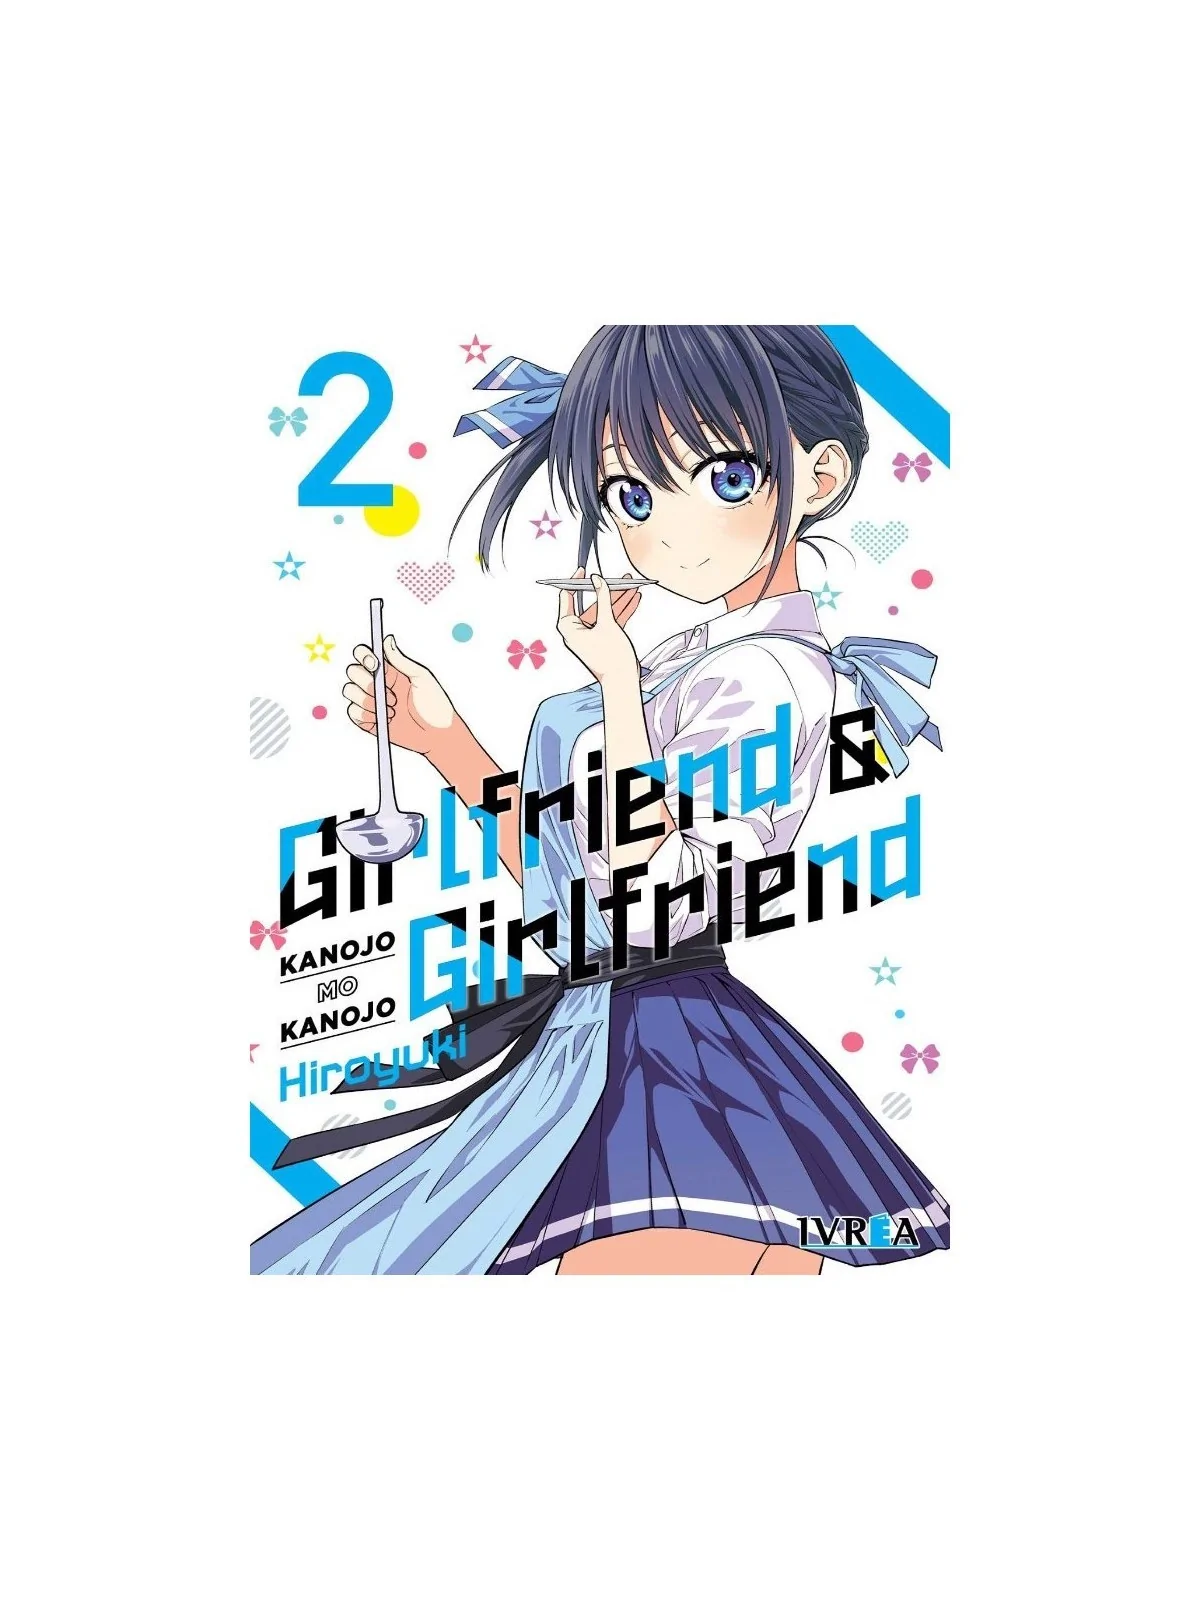 Comprar Girlfriend y Girlfriend Vol 2 barato al mejor precio 7,60 € de